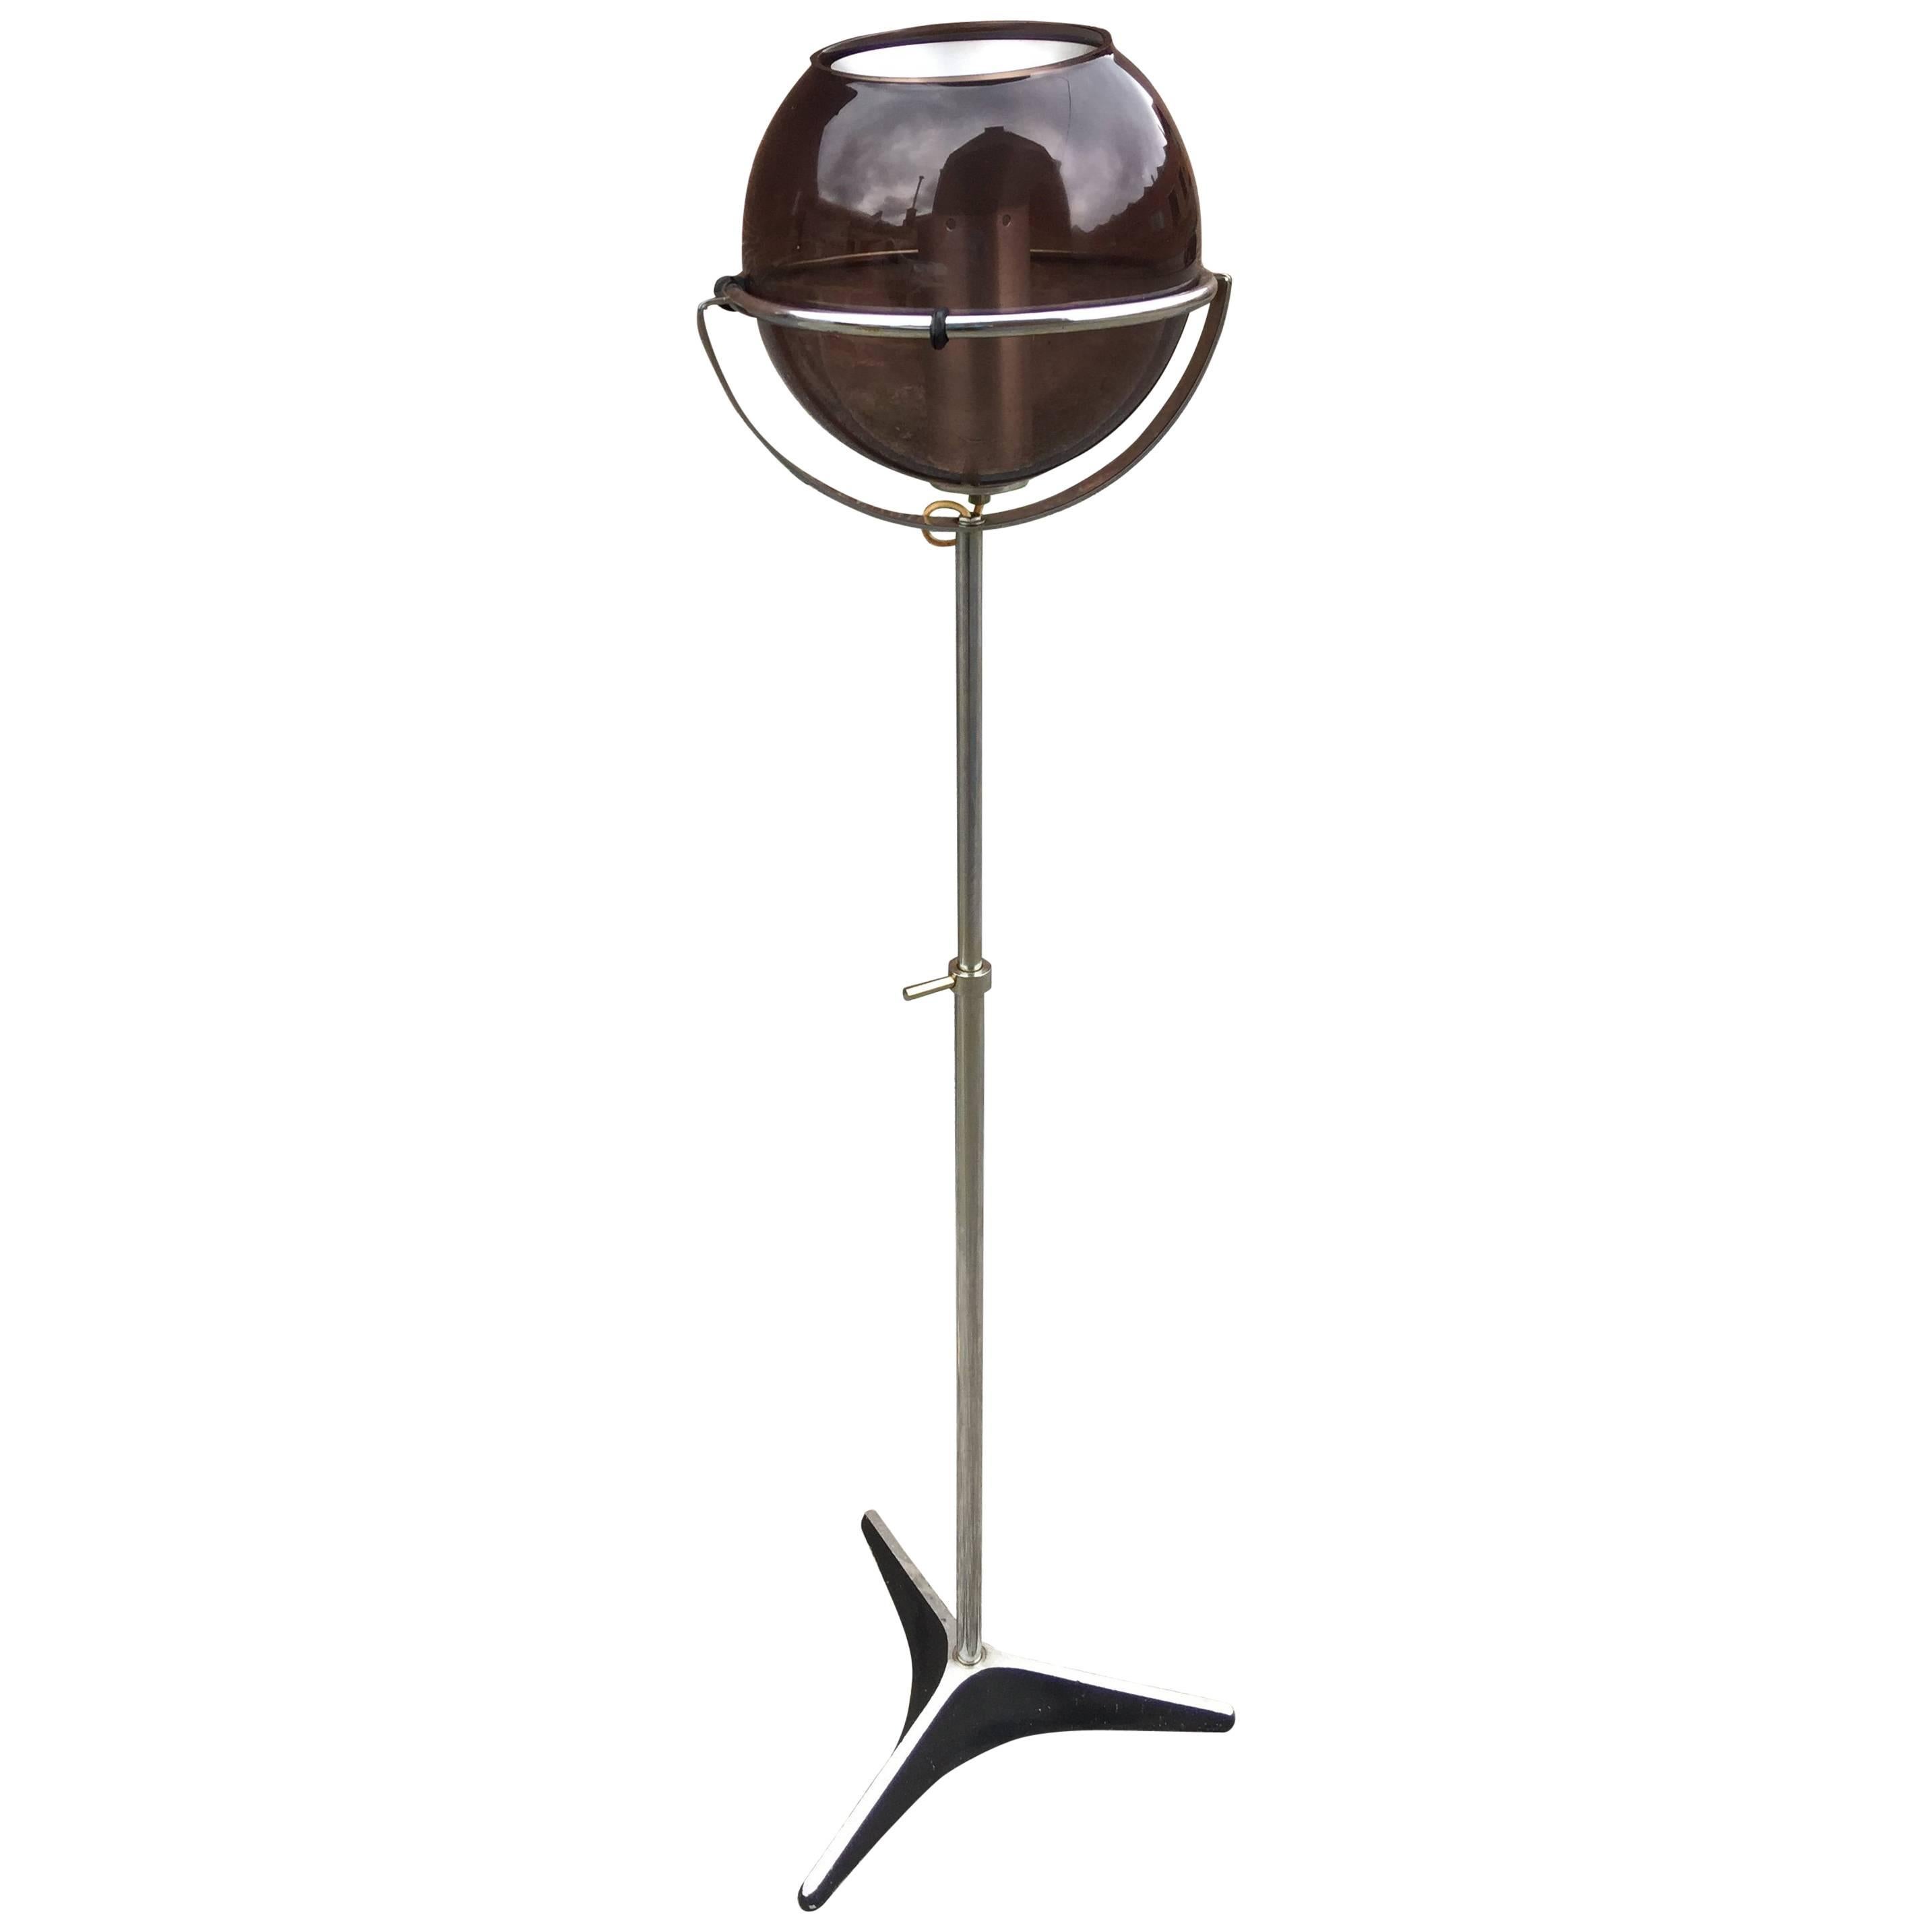 Frank Ligtelijn for RAAK, Floor Lamp with Adjustable Globe, 1960s For Sale